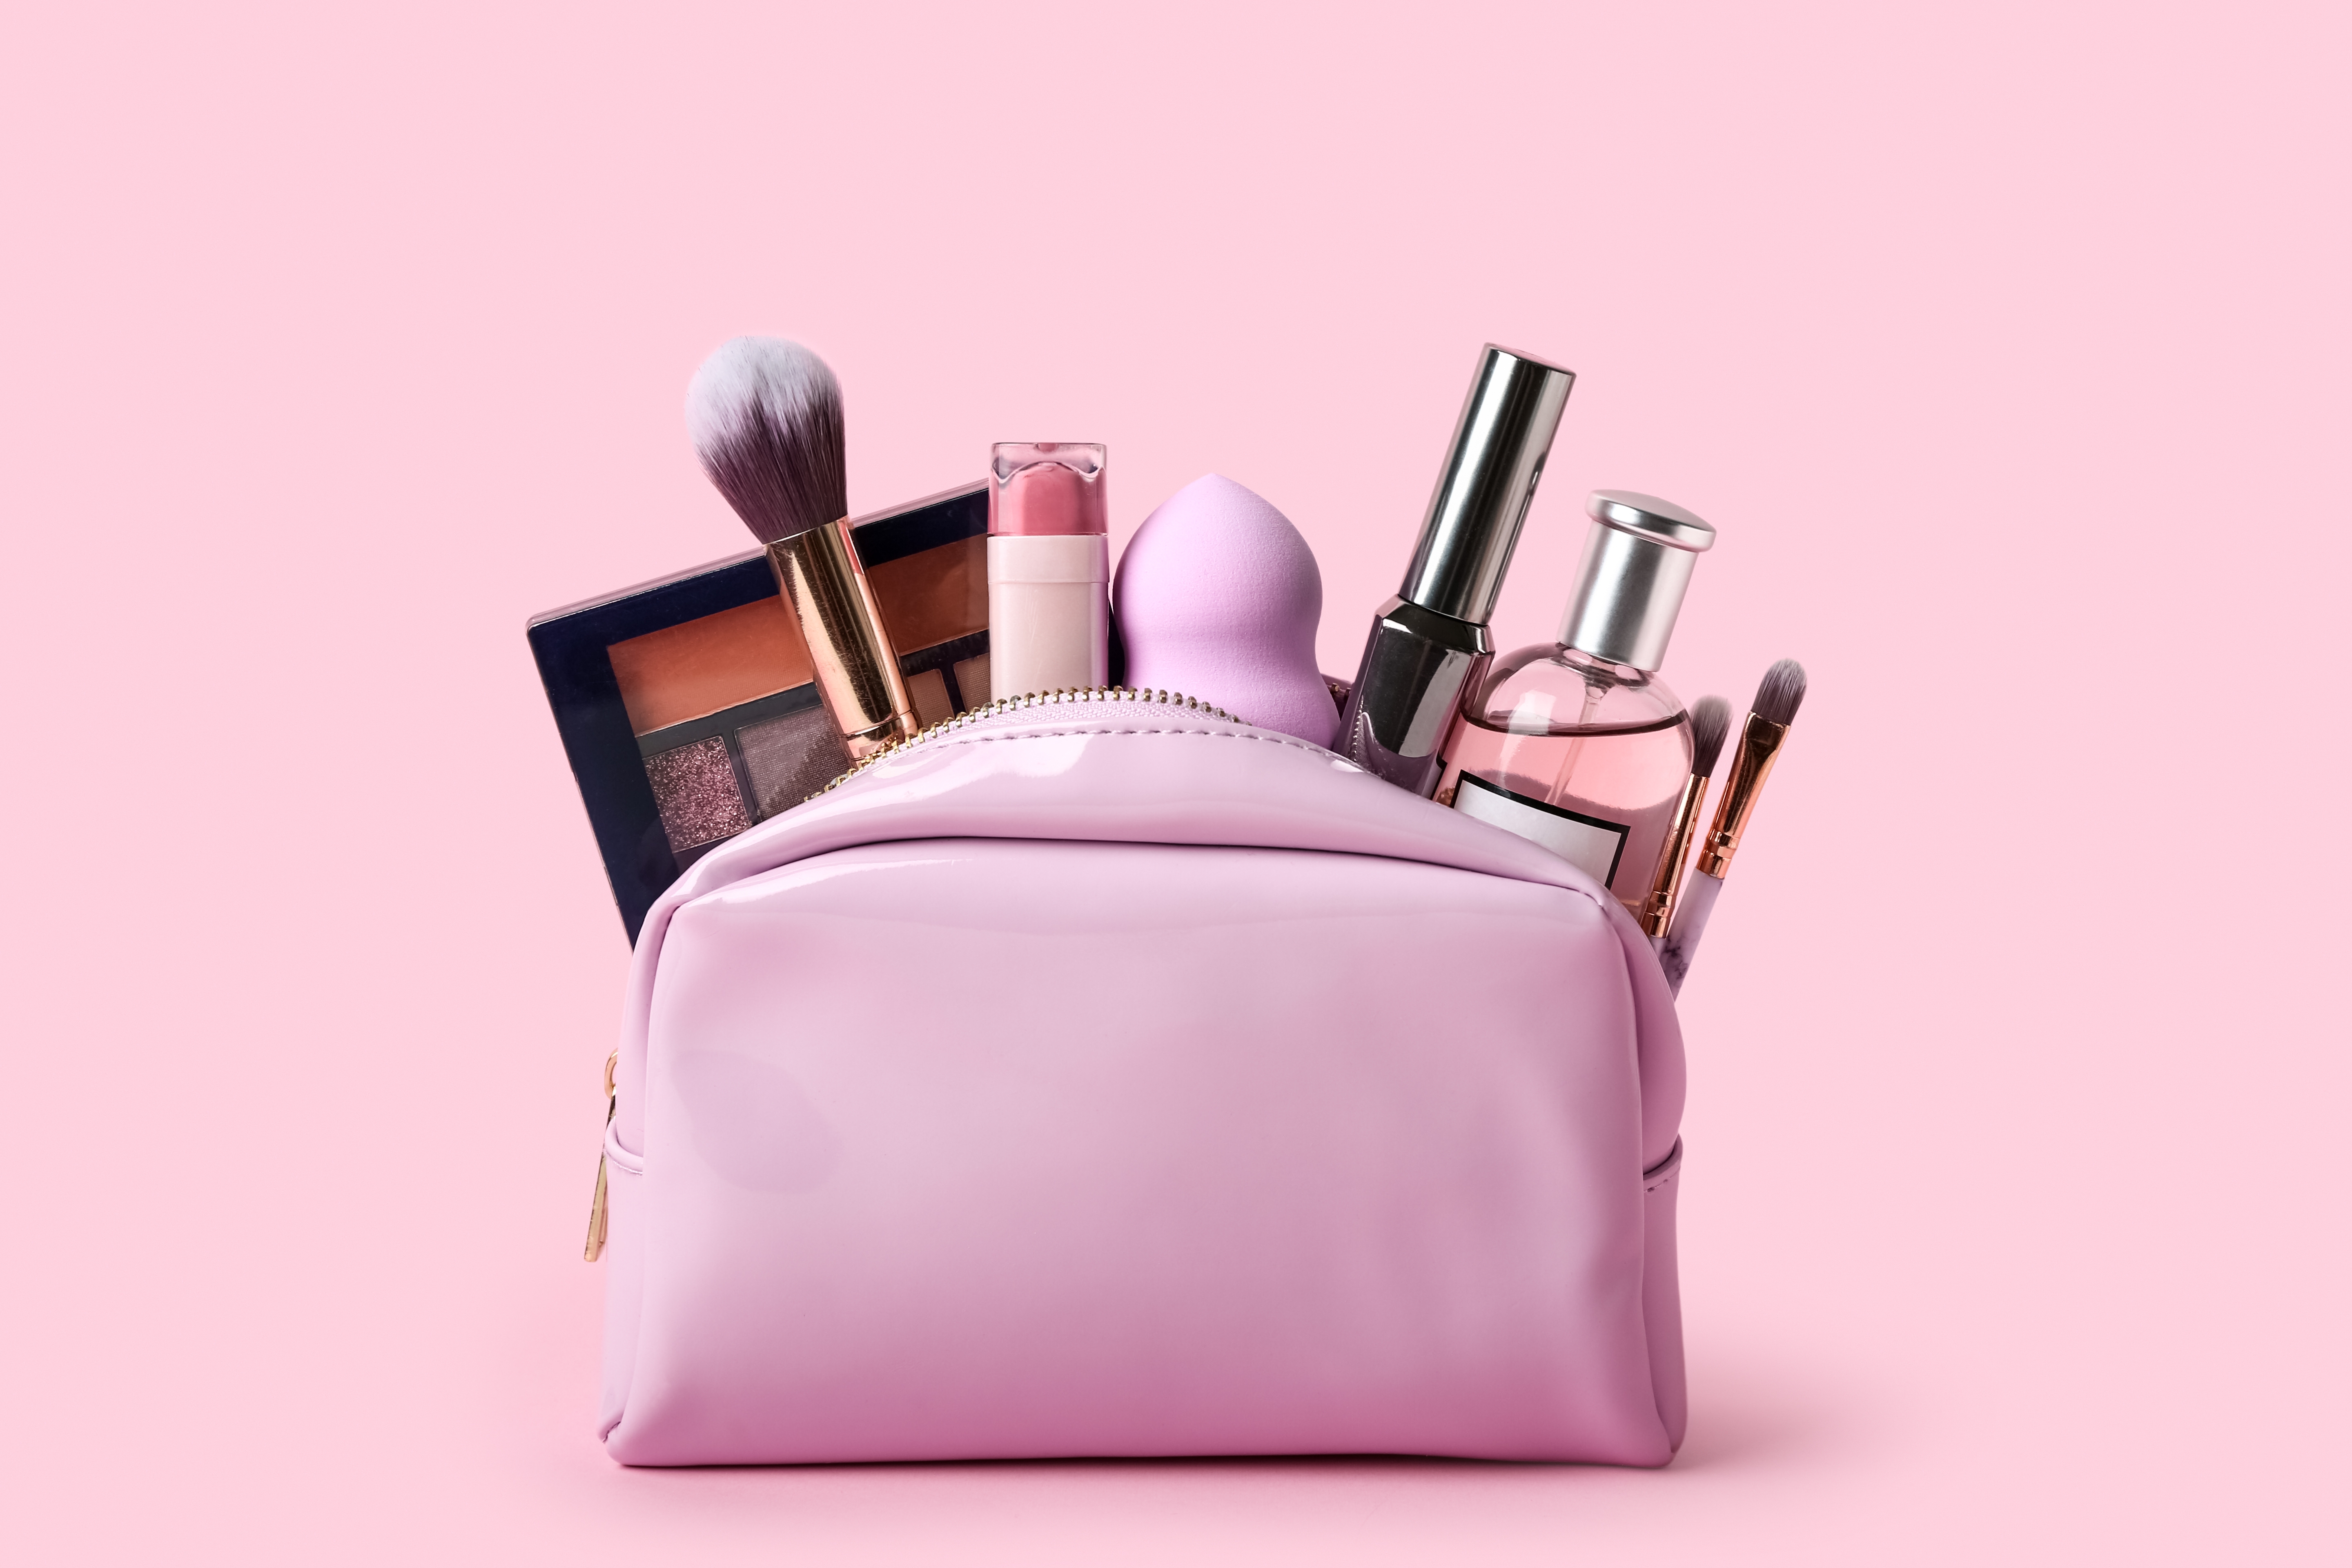 Une trousse de maquillage rose remplie de produits de beauté | Source : Shutterstock